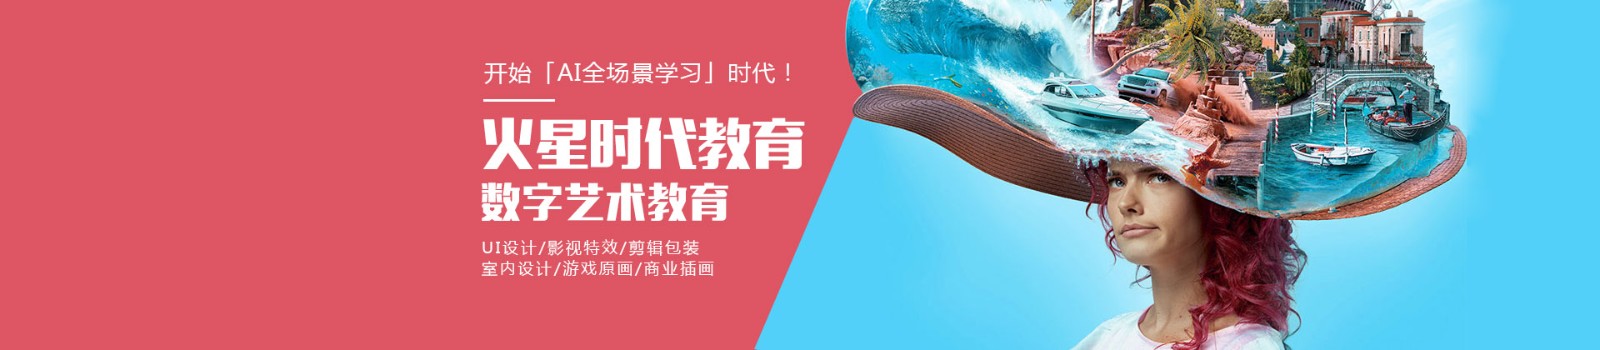 深圳火星时代教育 横幅广告